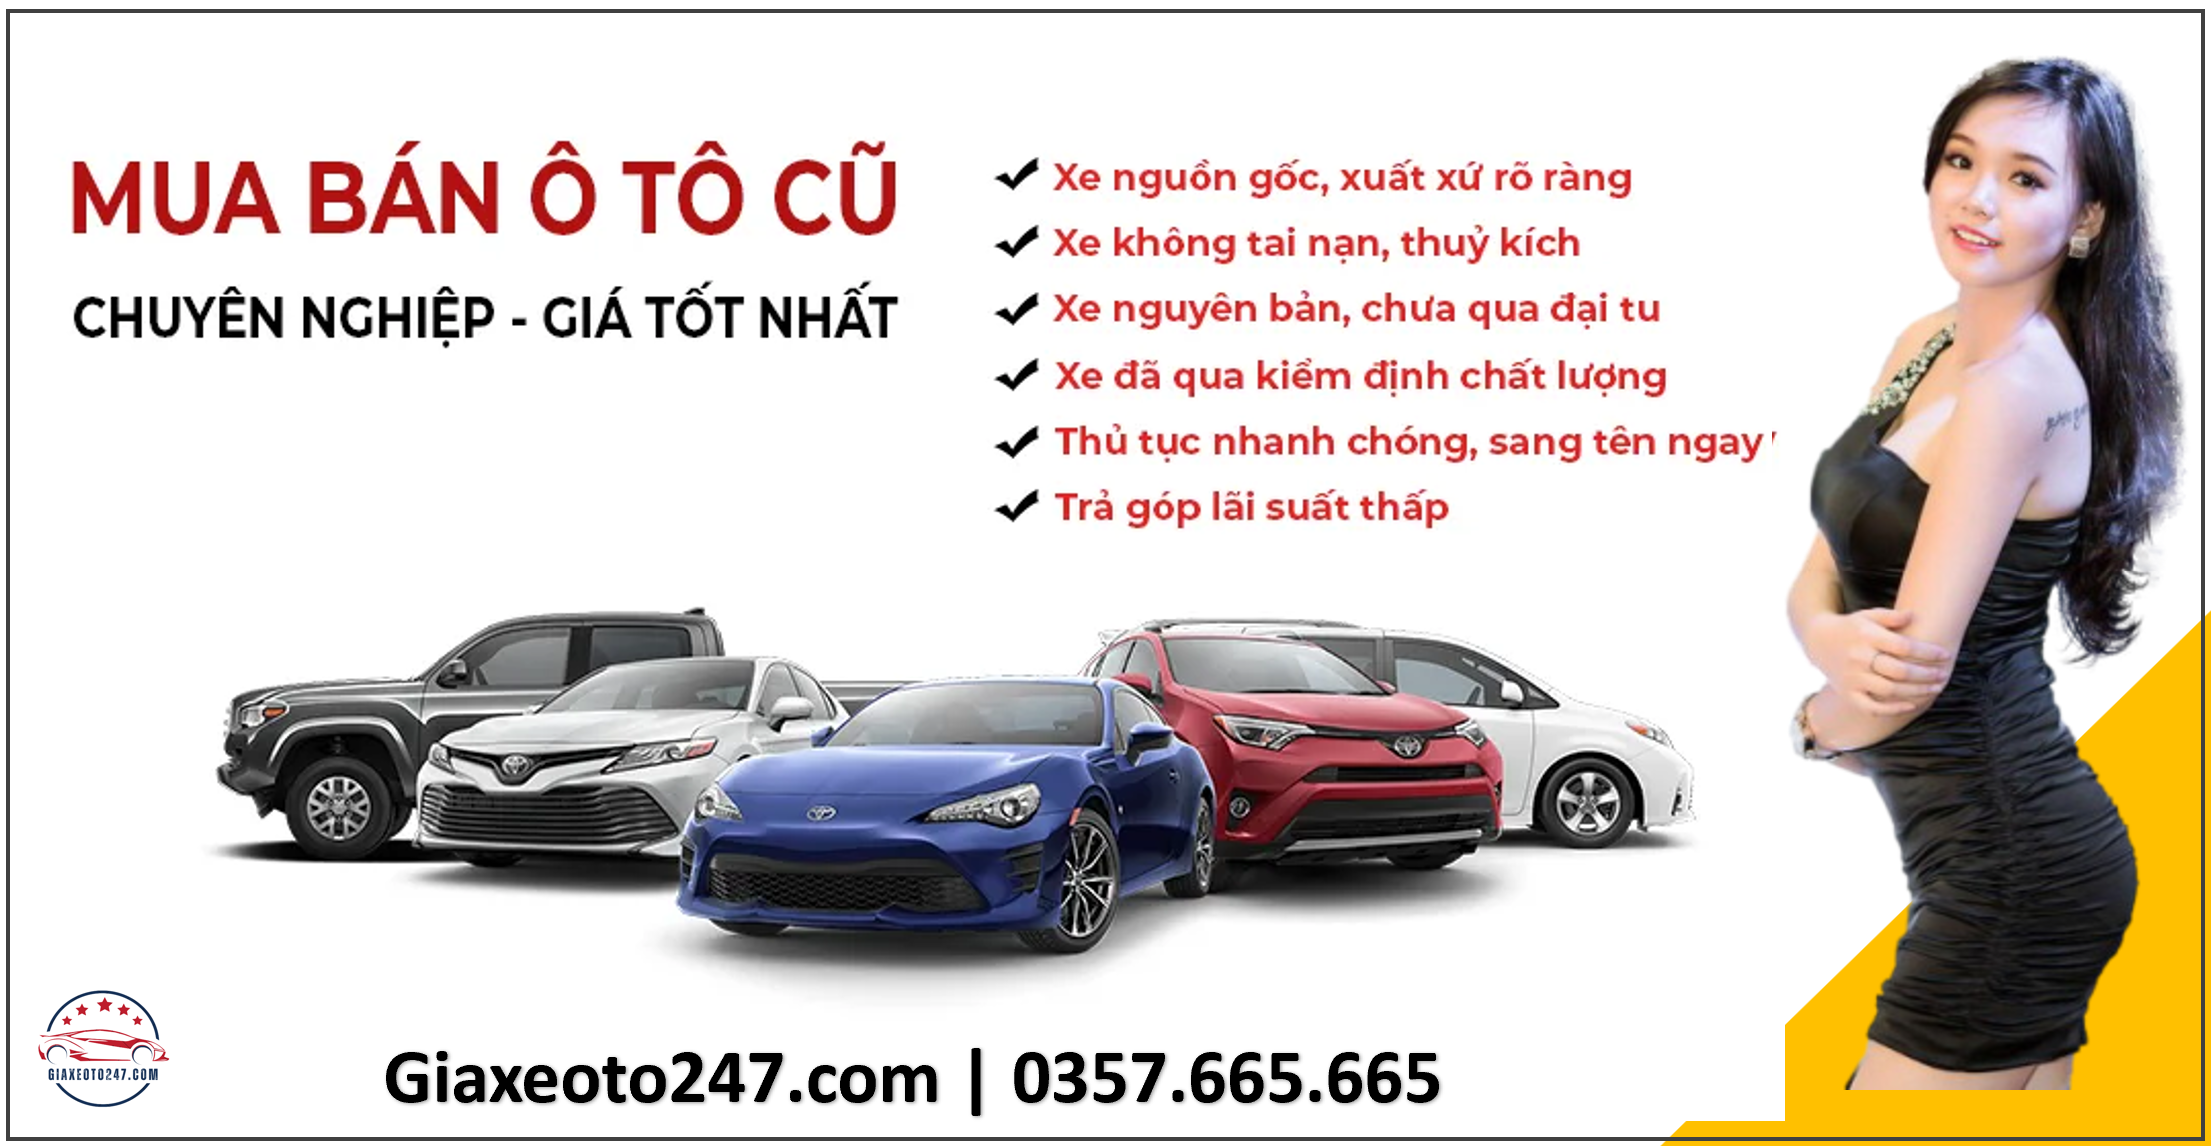 Dich vu thu mua o to cu da qua su dung mua ban toan quoc 3 - Địa chỉ các điểm đăng ký ô tô tại Hà Nội | Lịch bấm biển Lệ phí chi tiết